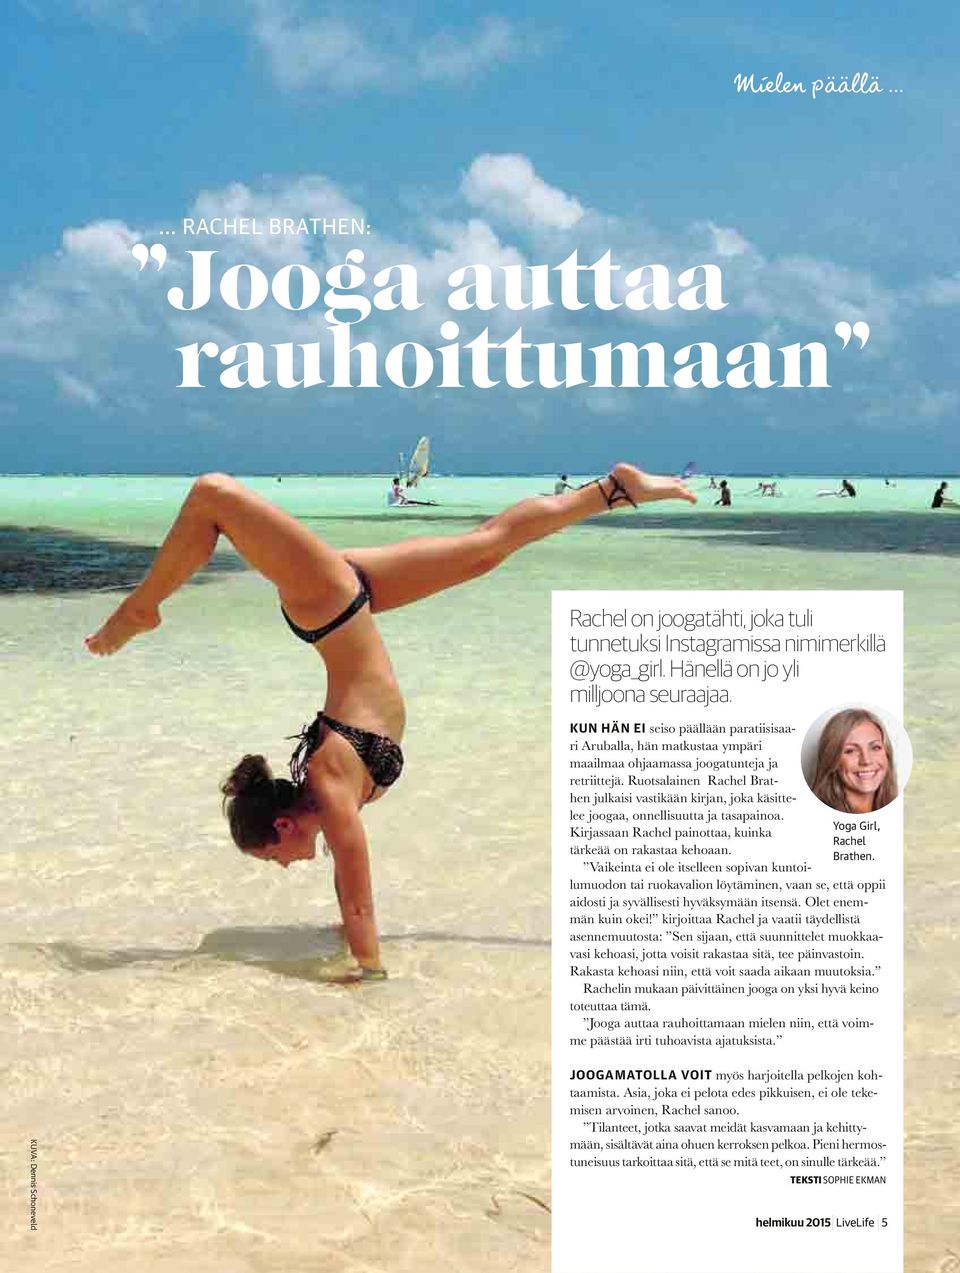 Ruotsalainen Rachel Brathen julkaisi vastikään kirjan, joka käsittelee joogaa, onnellisuutta ja tasapainoa. Kirjassaan Rachel painottaa, kuinka tärkeää on rakastaa kehoaan.